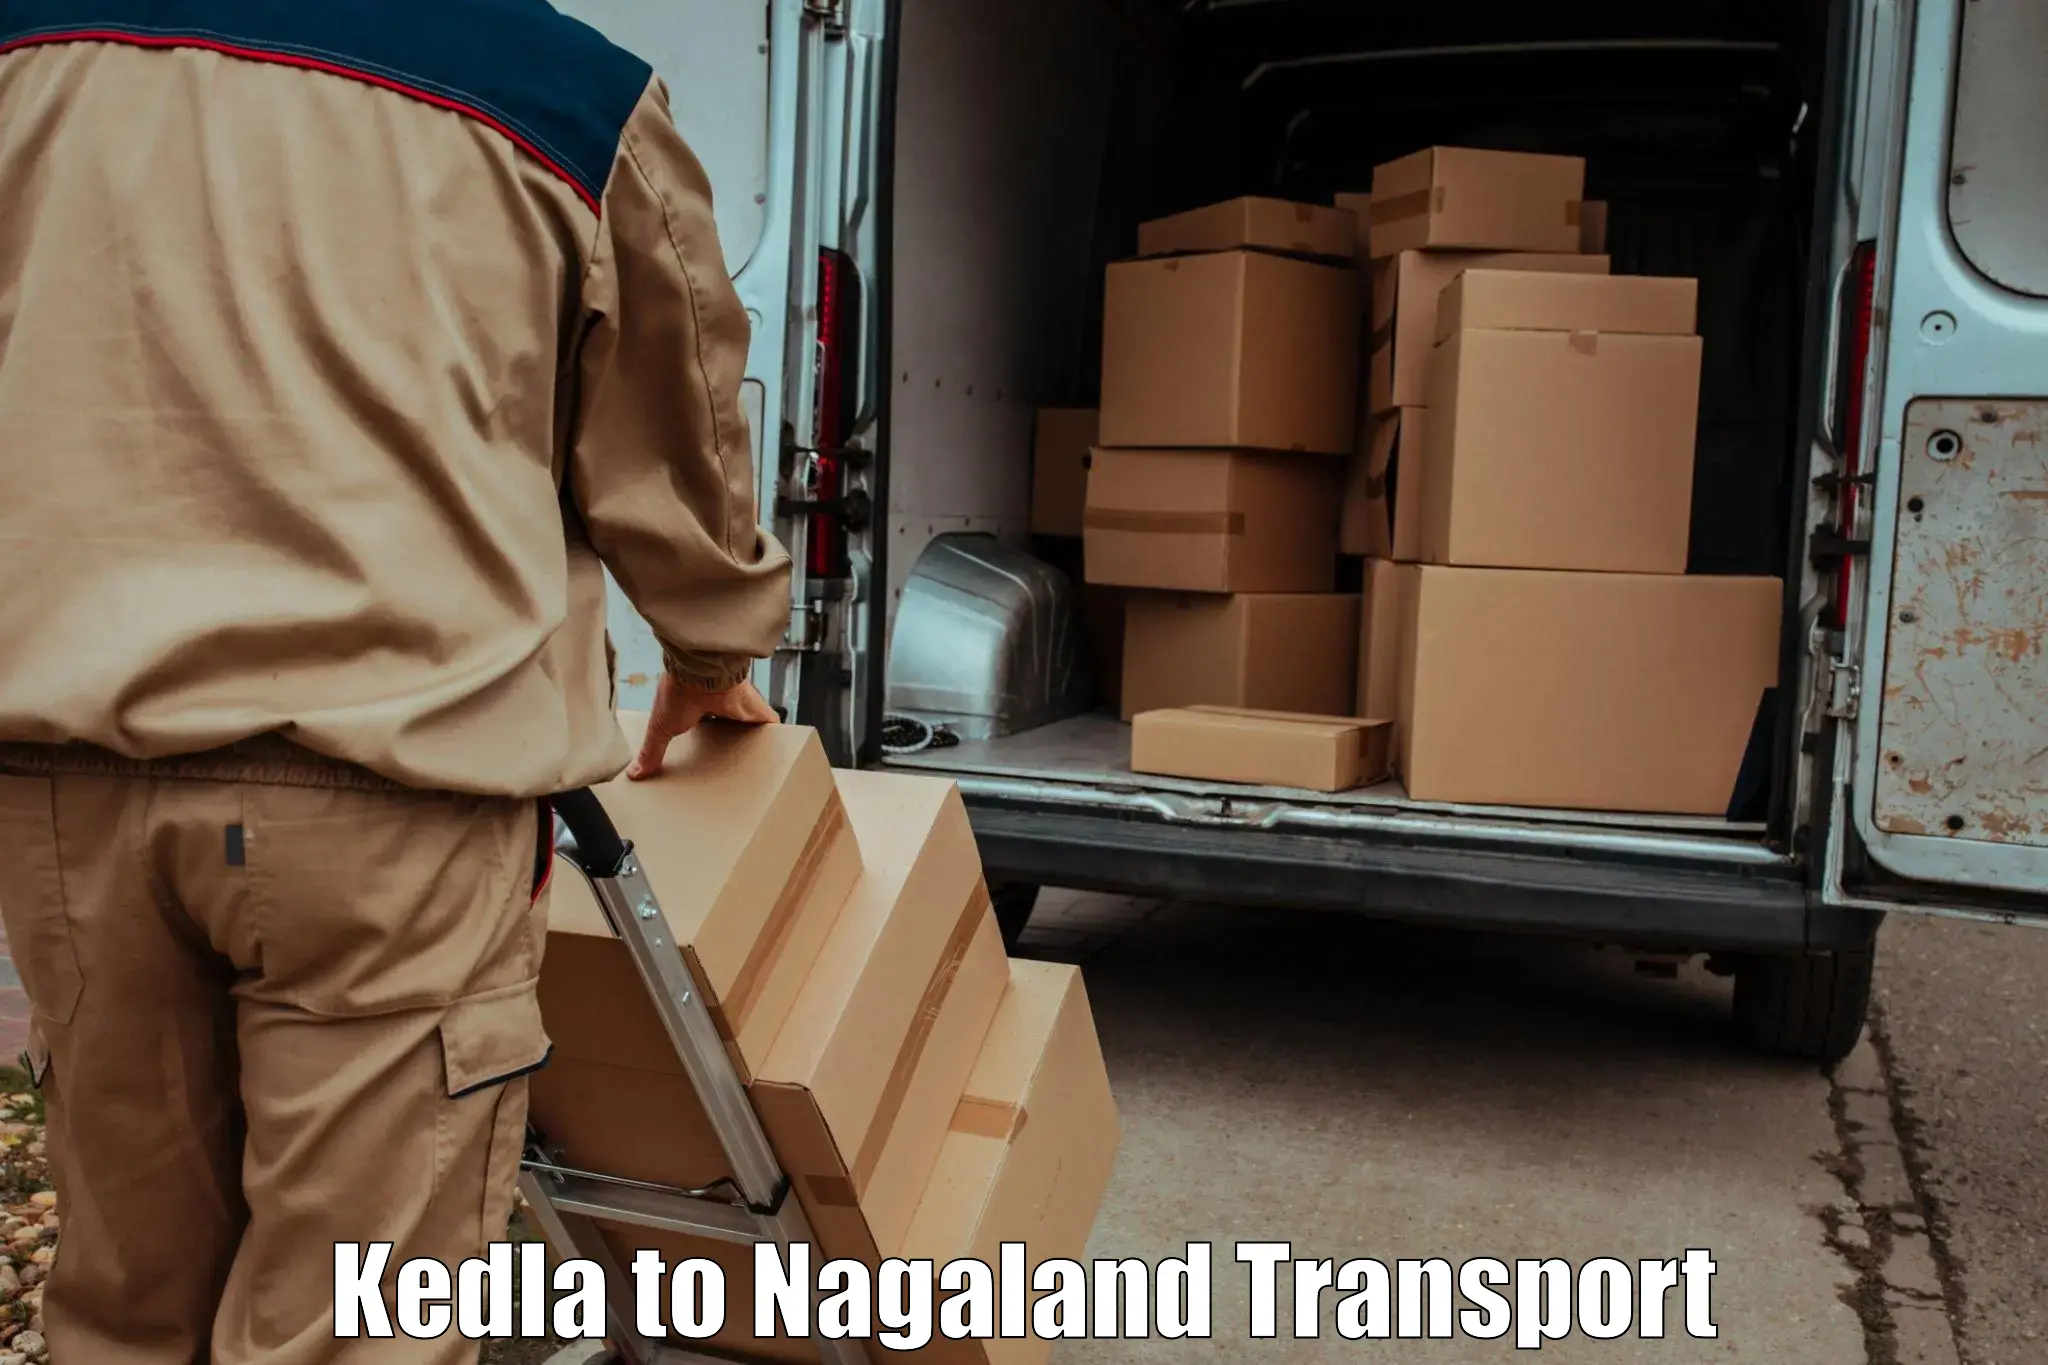 Cargo transport services Kedla to Kohima